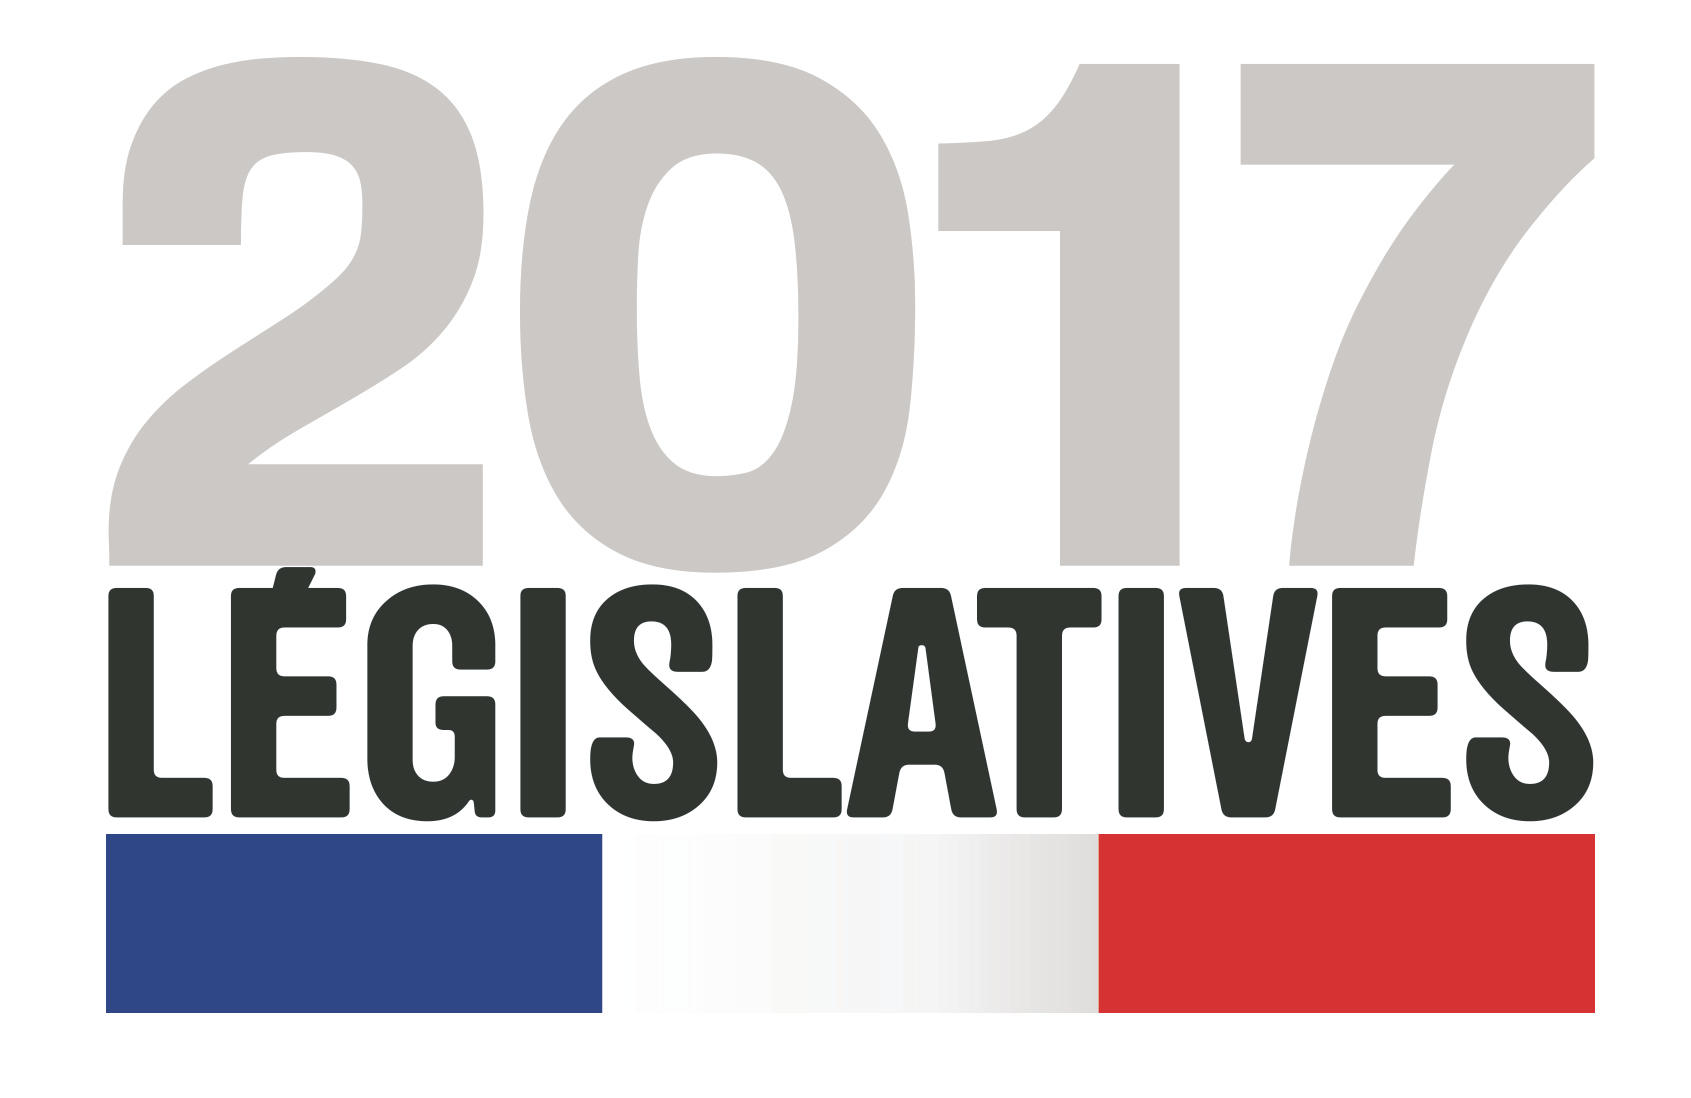 Législatives 2017